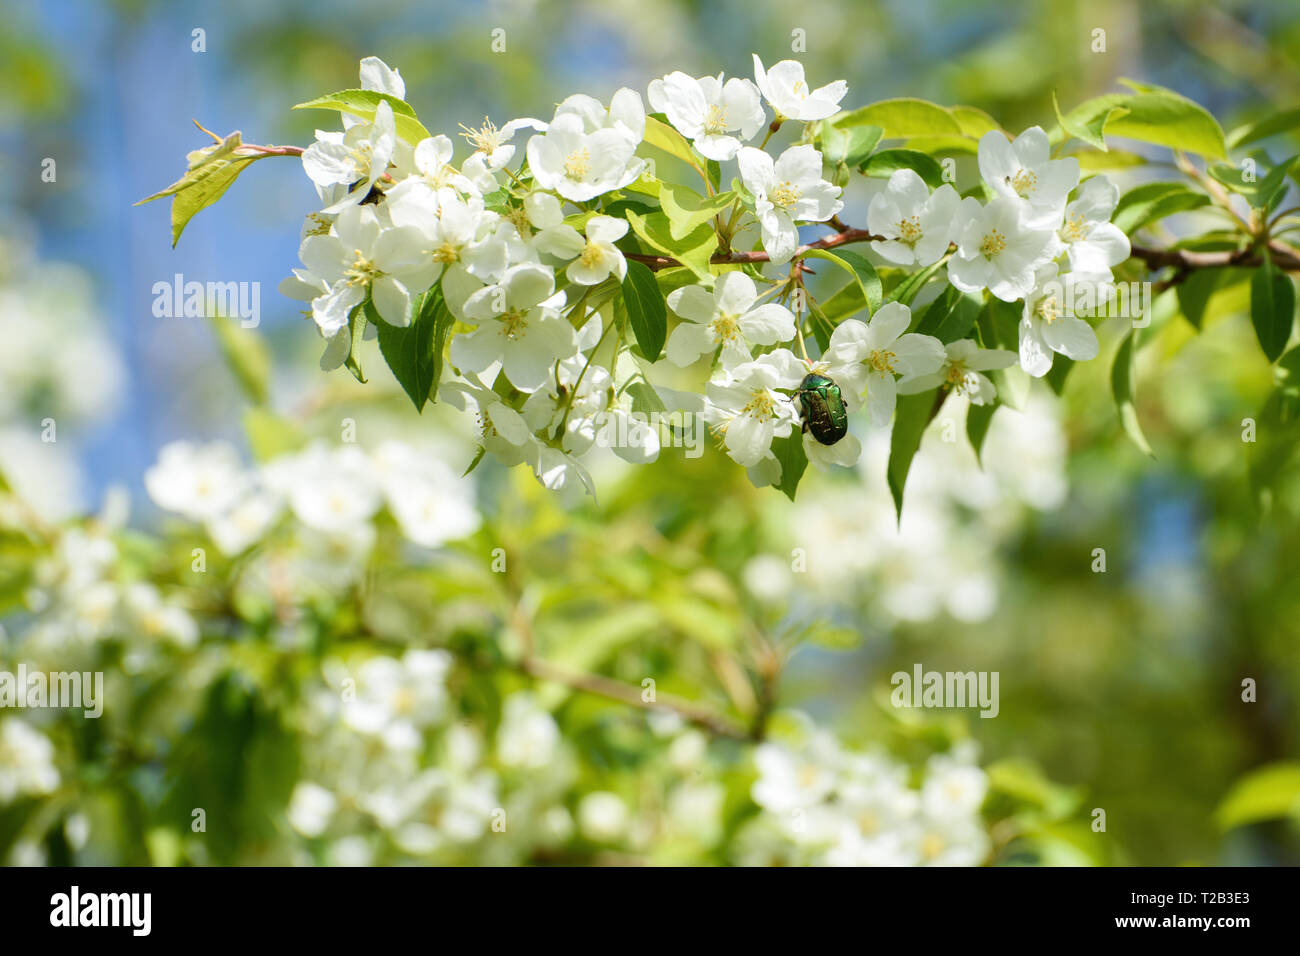 Frühling Landschaft: blühender Apfelbaum Zweig mit kleinen Käfer im Garten an einem sonnigen Tag Stockfoto